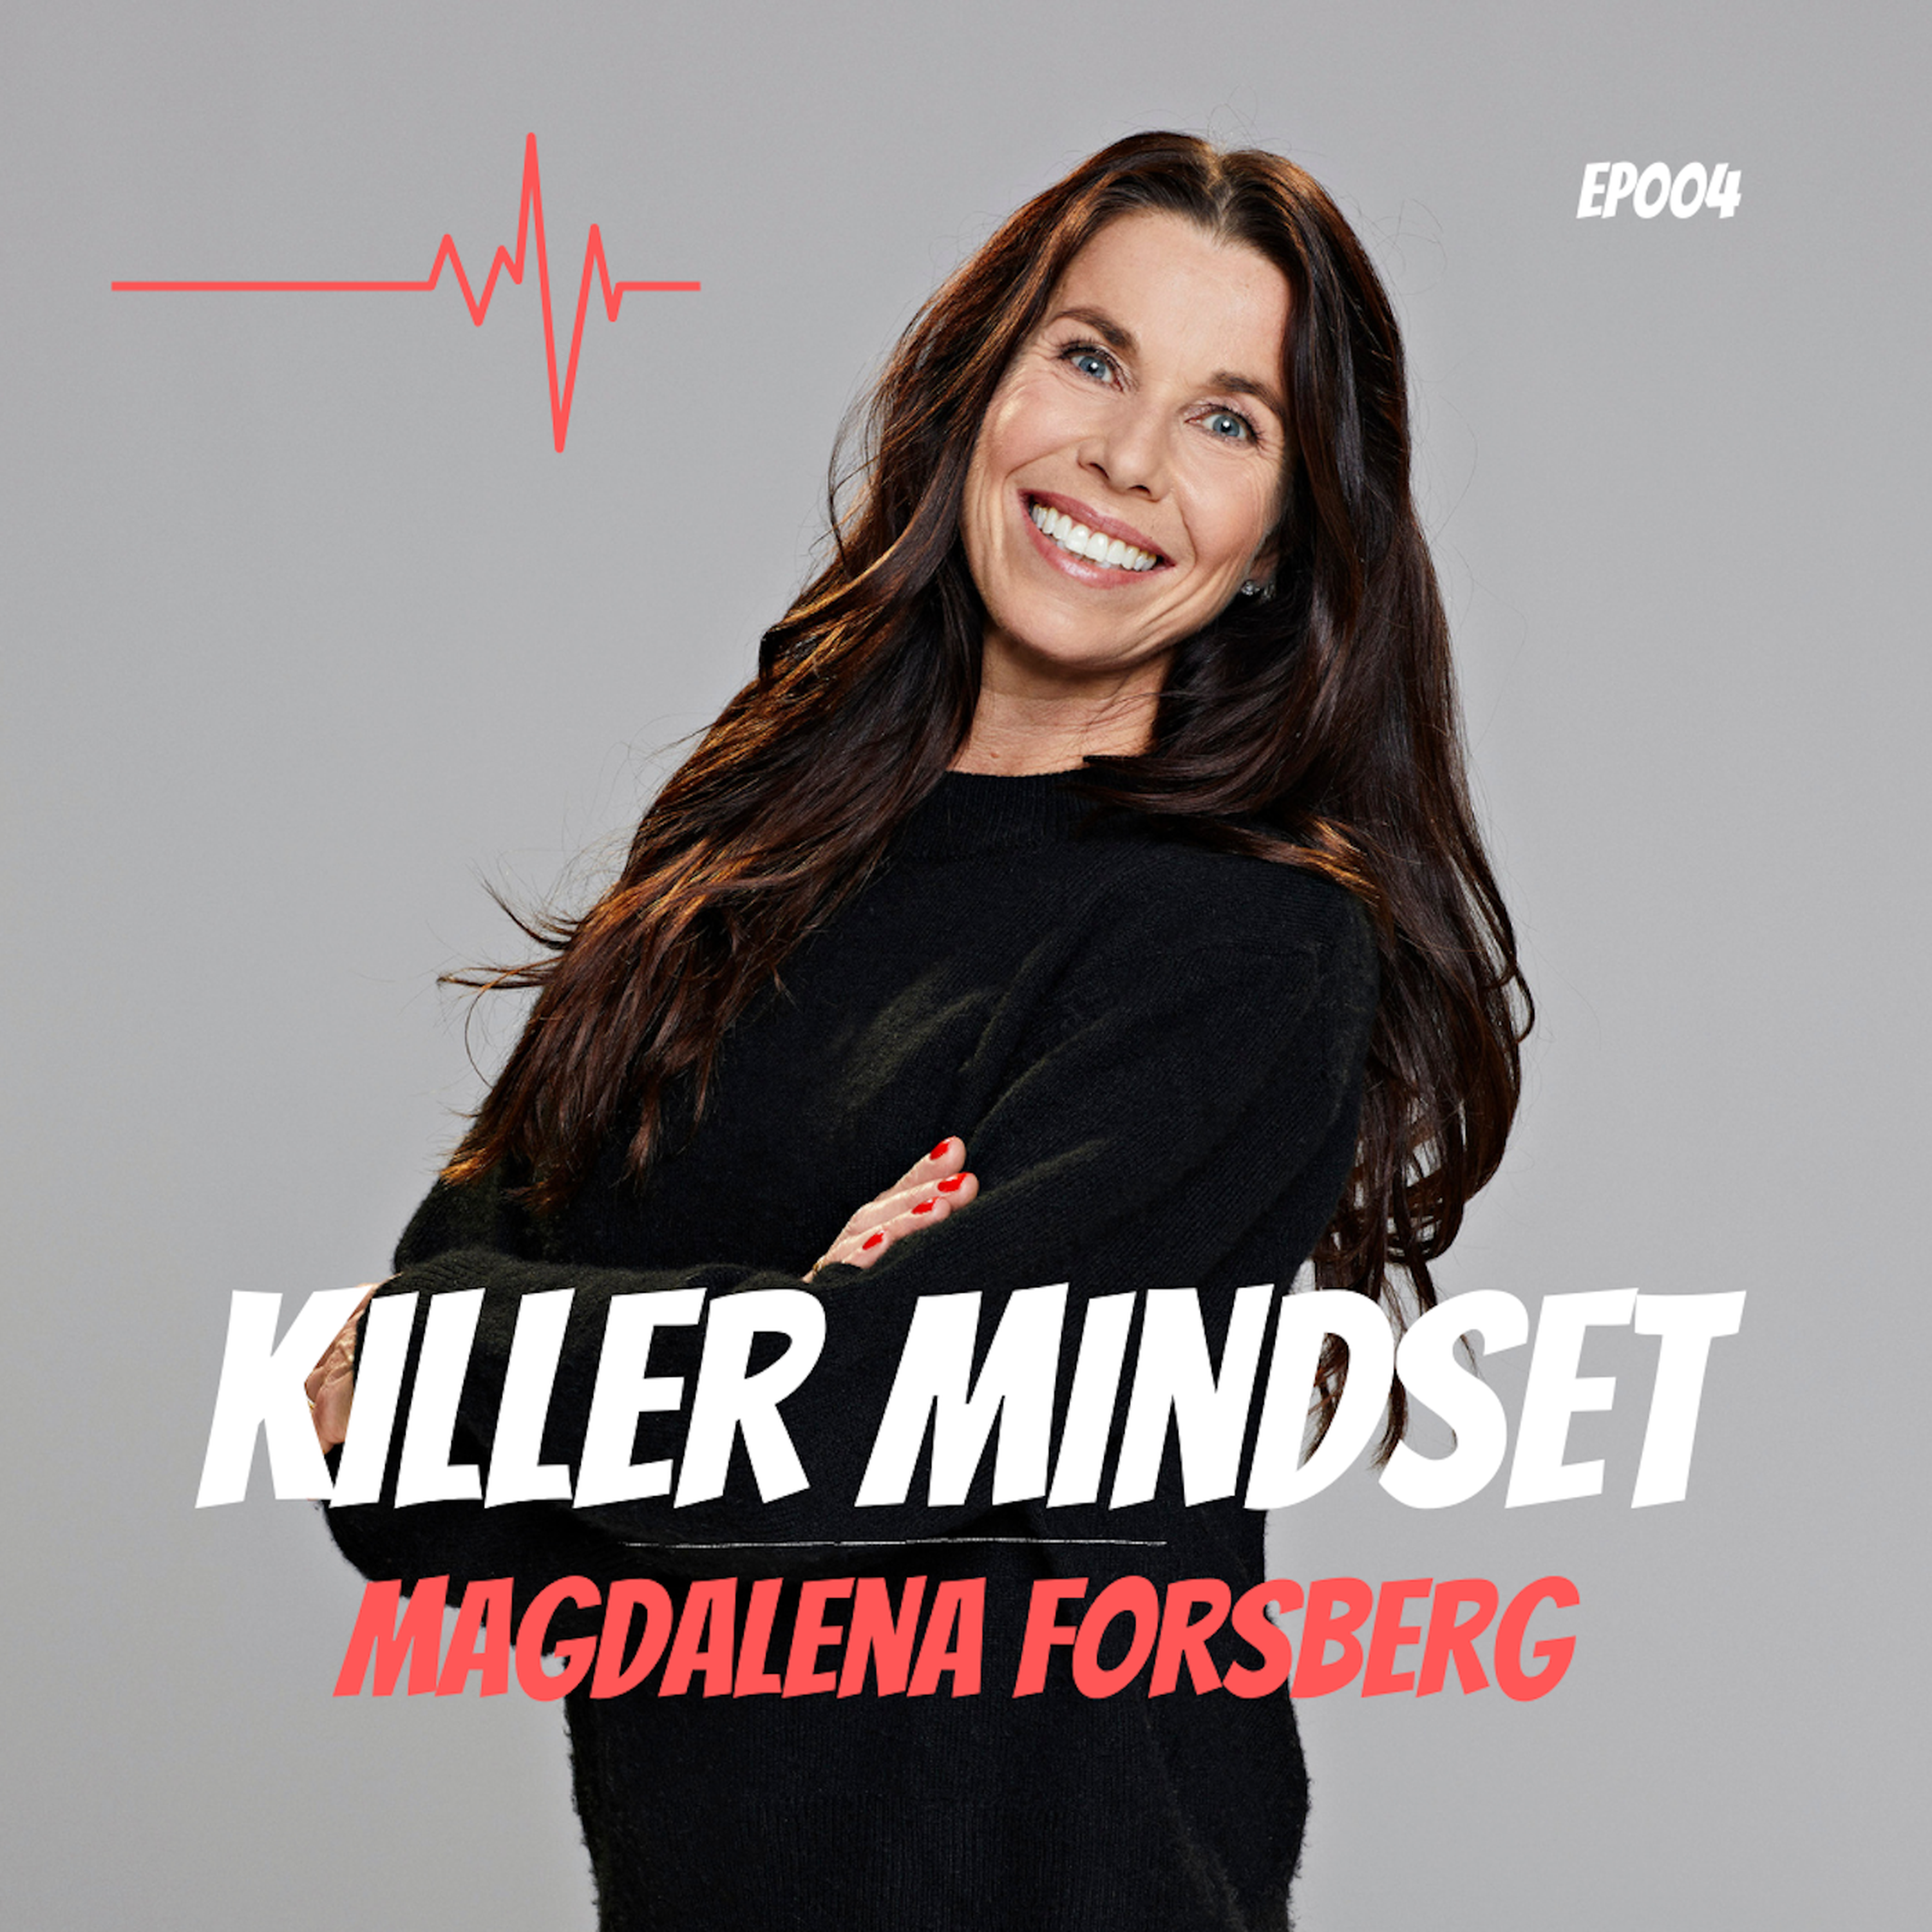 Episod 4 - Magdalena Forsbergs “Killer mindset